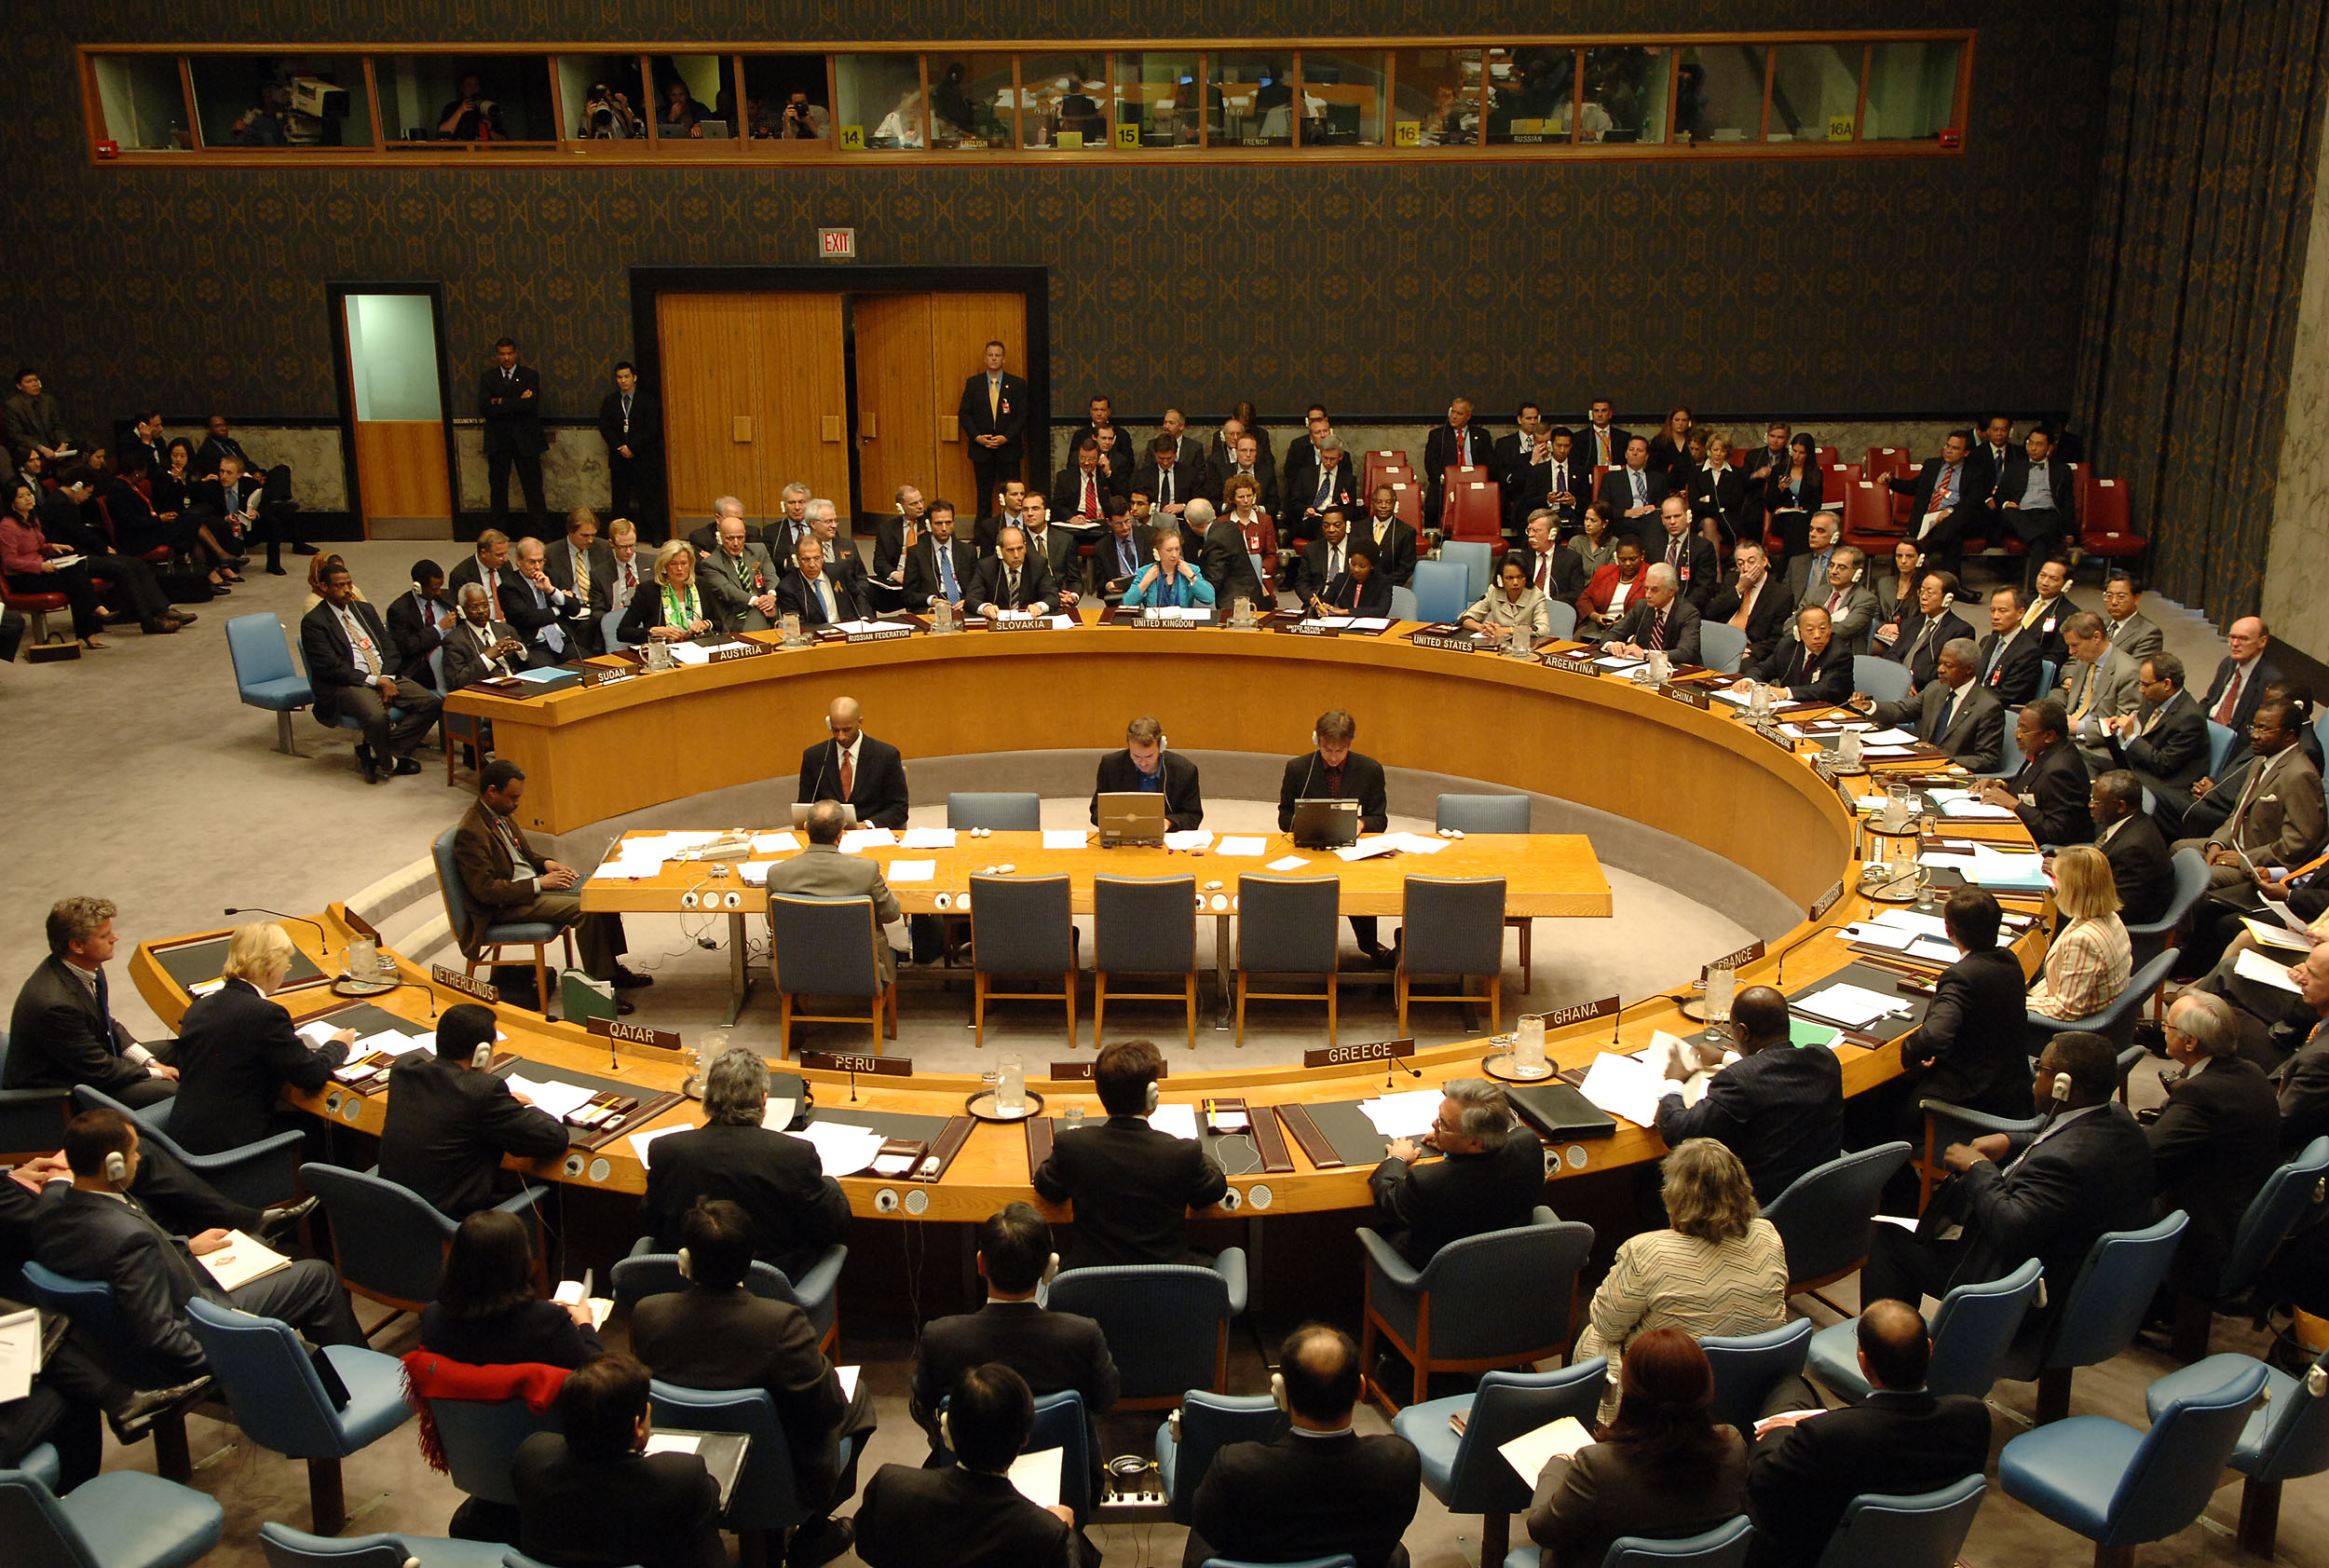 جلسة مجلس الأمن تنتهي بدون تصويت بشأن سورية